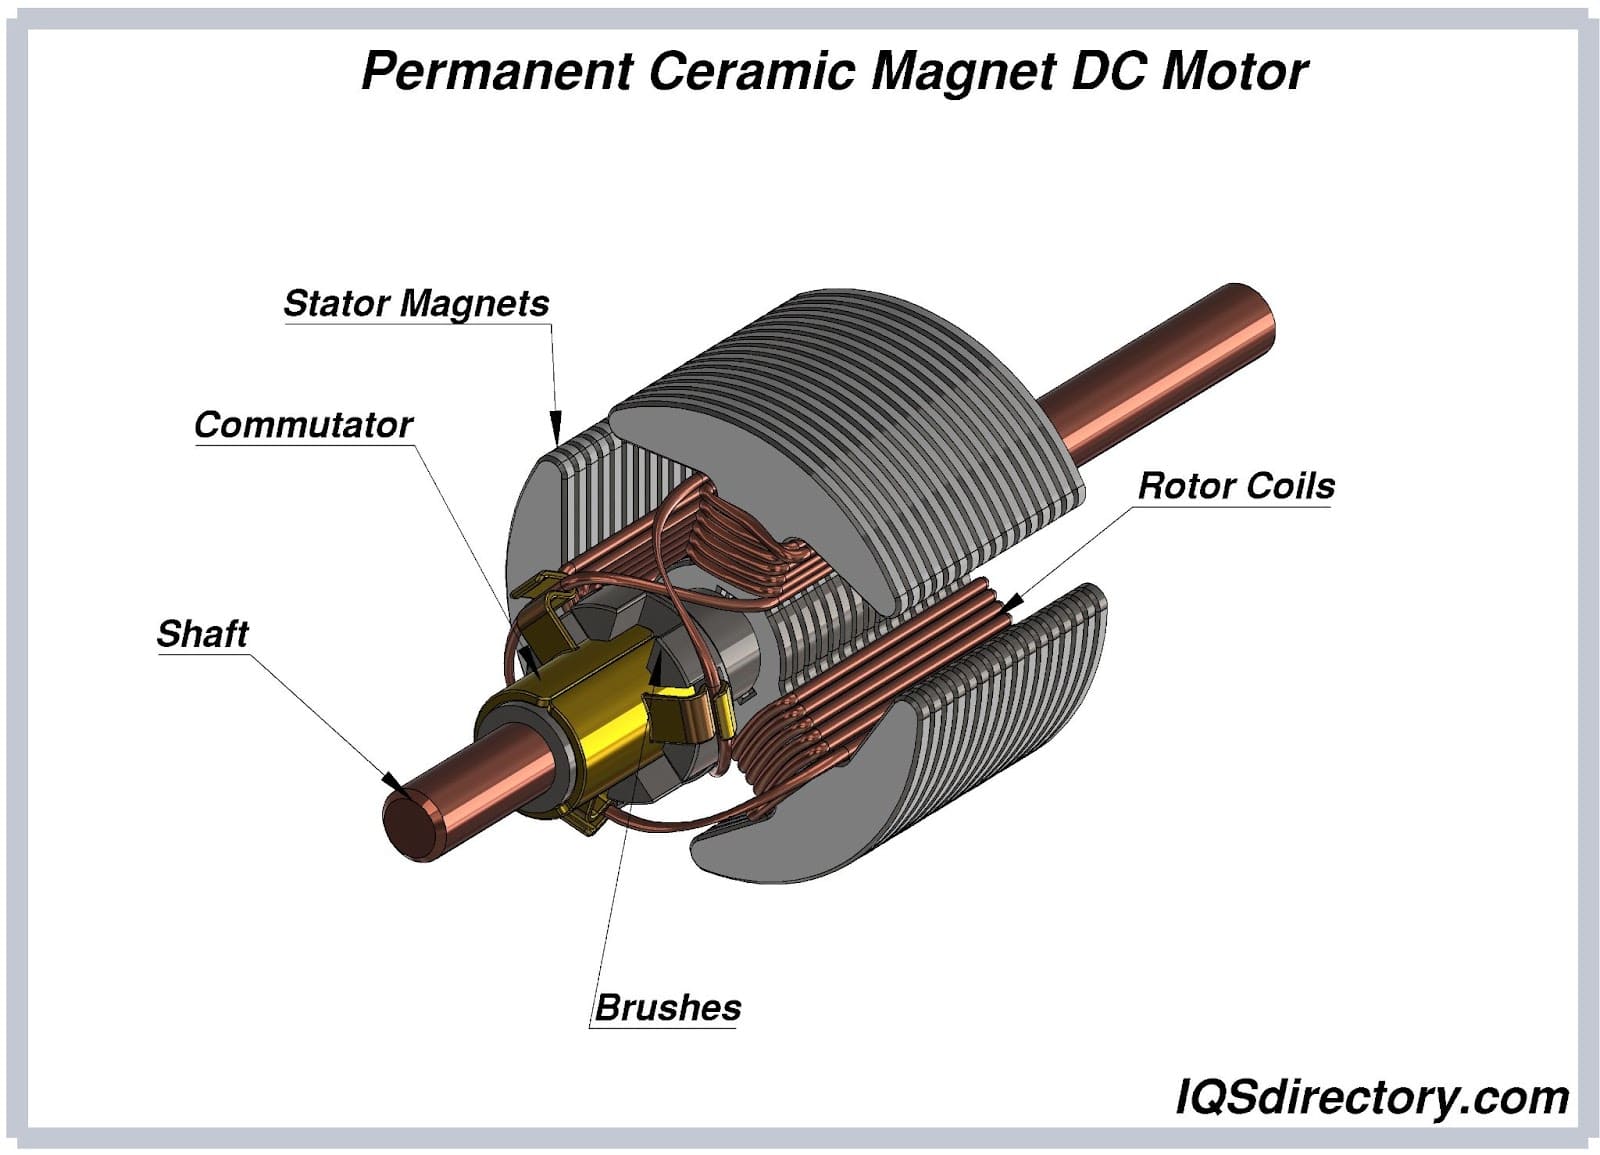 Permanent Ceramic Magnet DC Motor